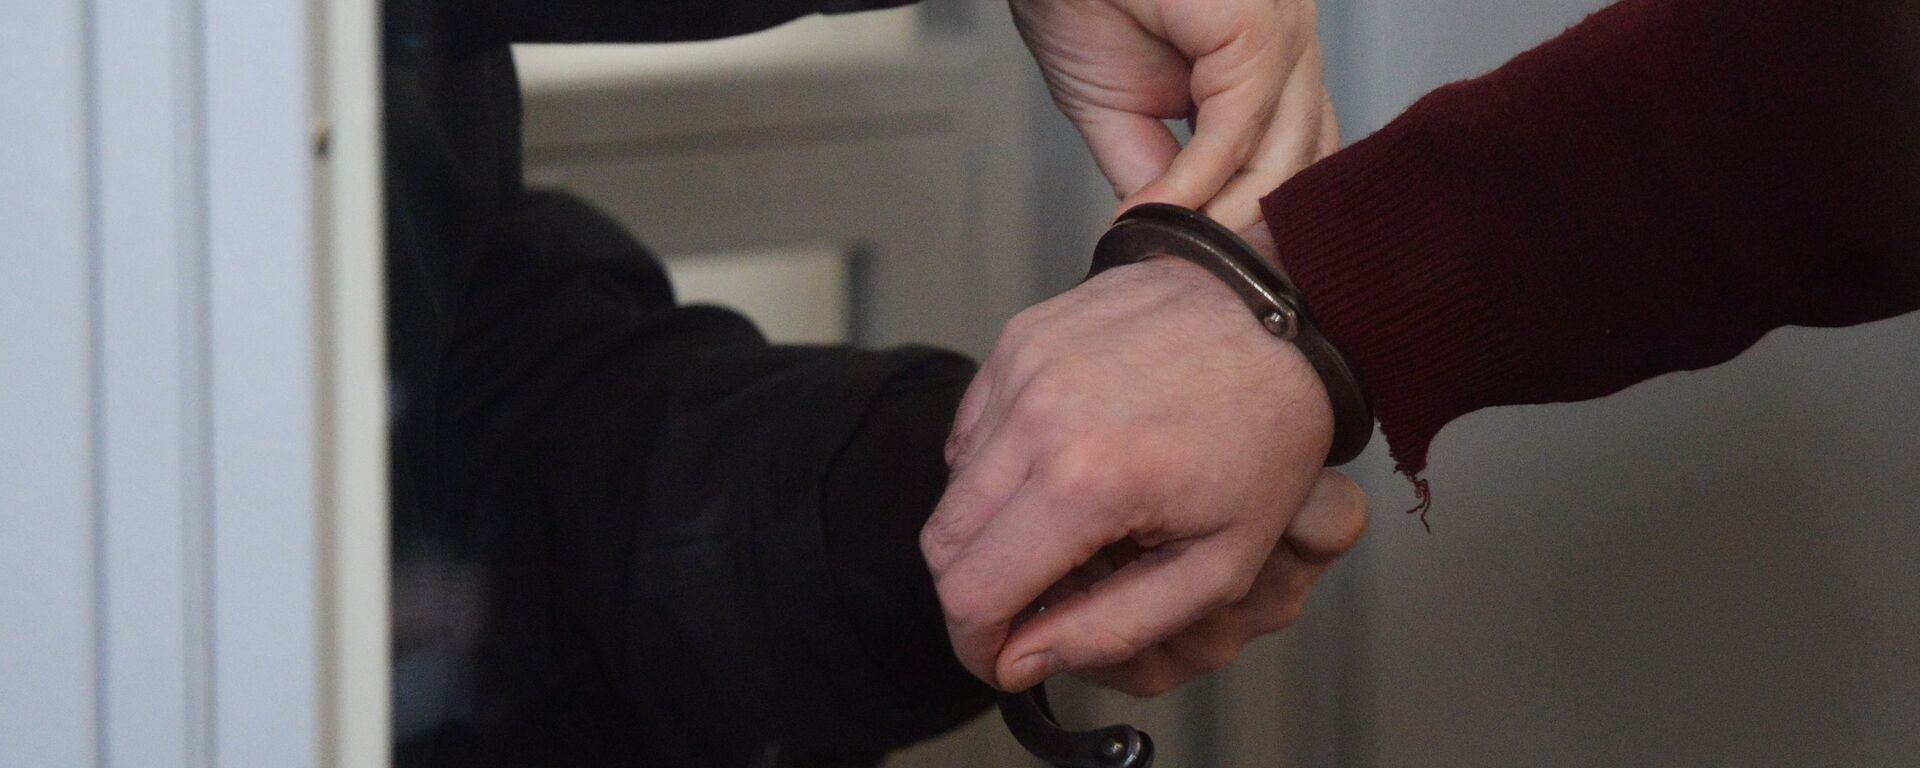 Сотрудник правоохранительных органов снимает наручники, архивное фото - Sputnik Қазақстан, 1920, 06.02.2021